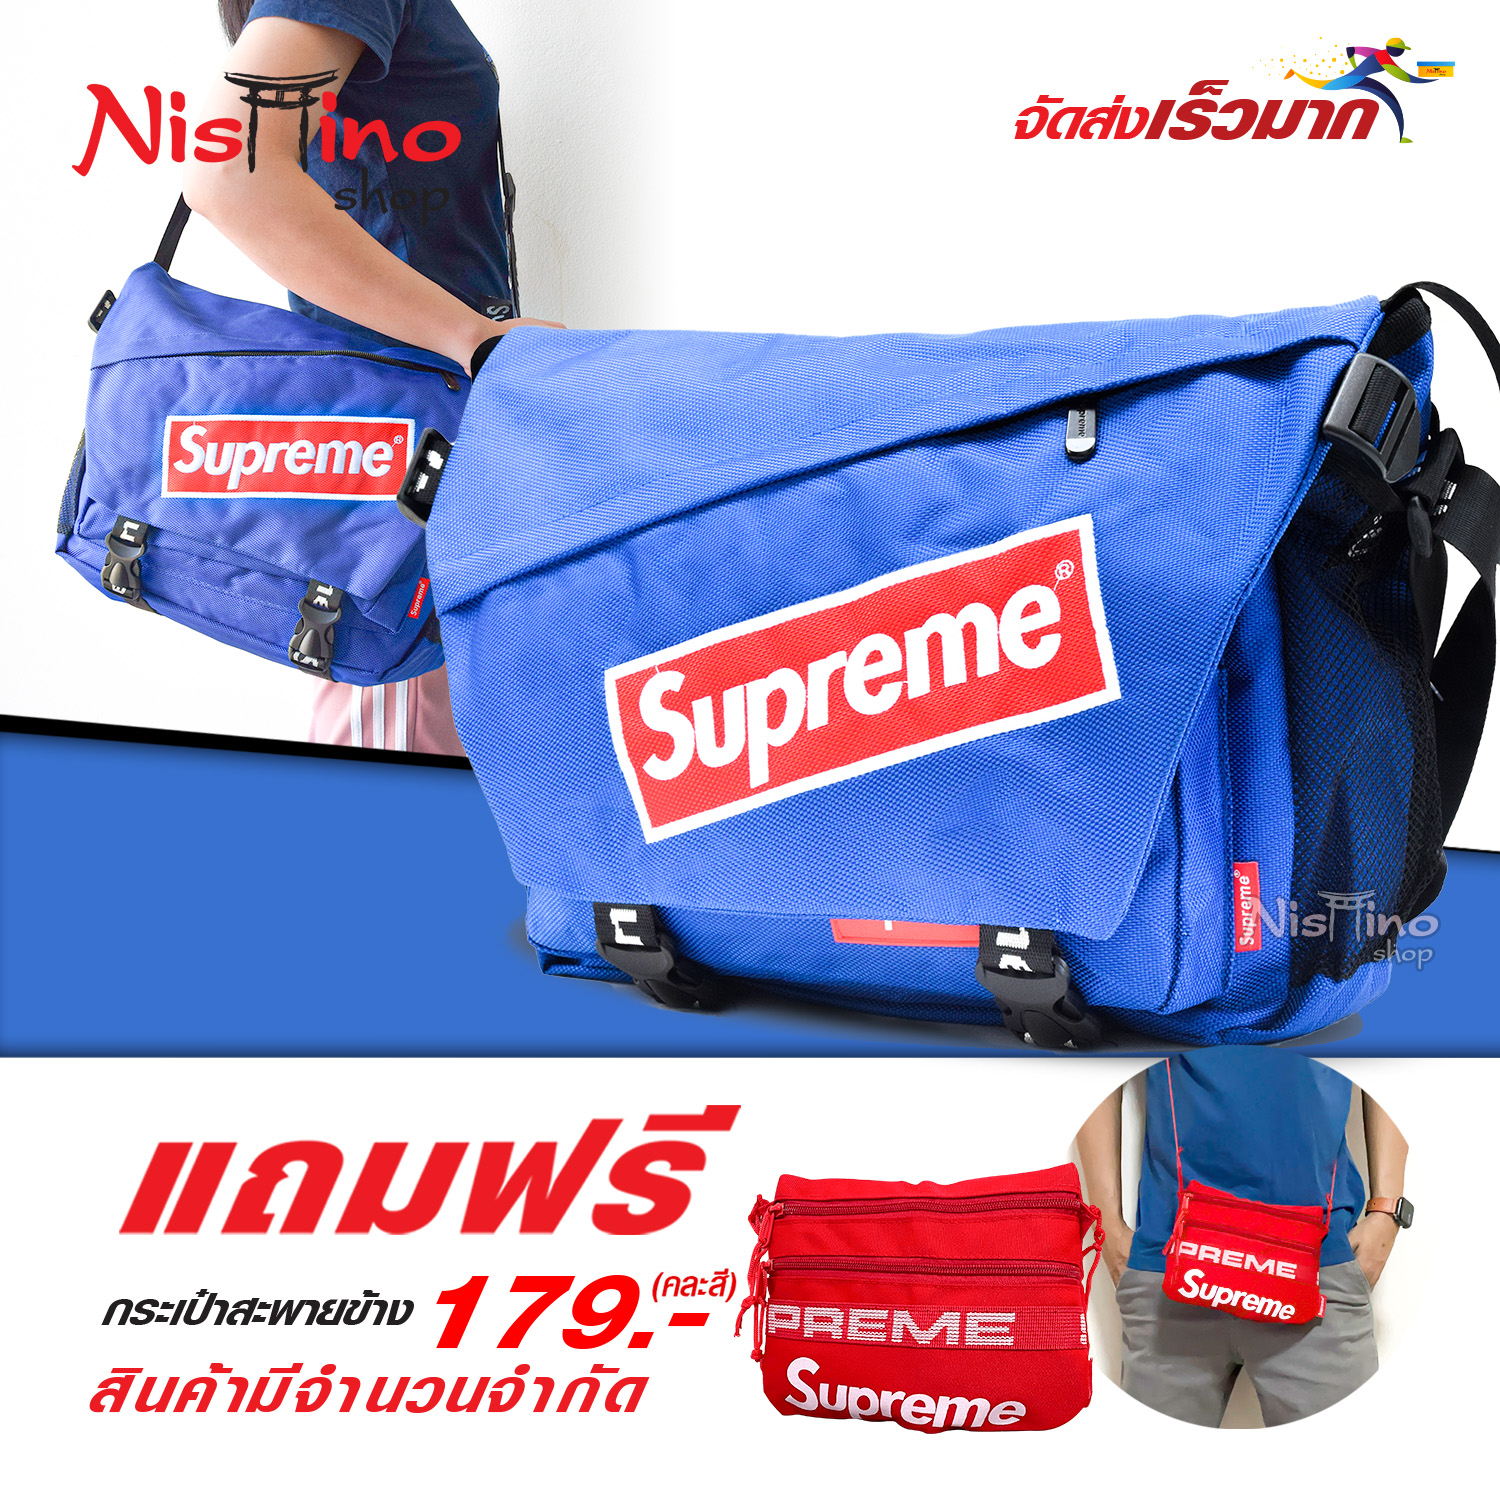 Nishino กระเป๋าสะพายข้าง ใบใหญ่ ใช้งานได้คุ้มค่าSupreme-NSN 885 (มีหลายสี) แถมฟรีกระเป๋าสะพายข้าง